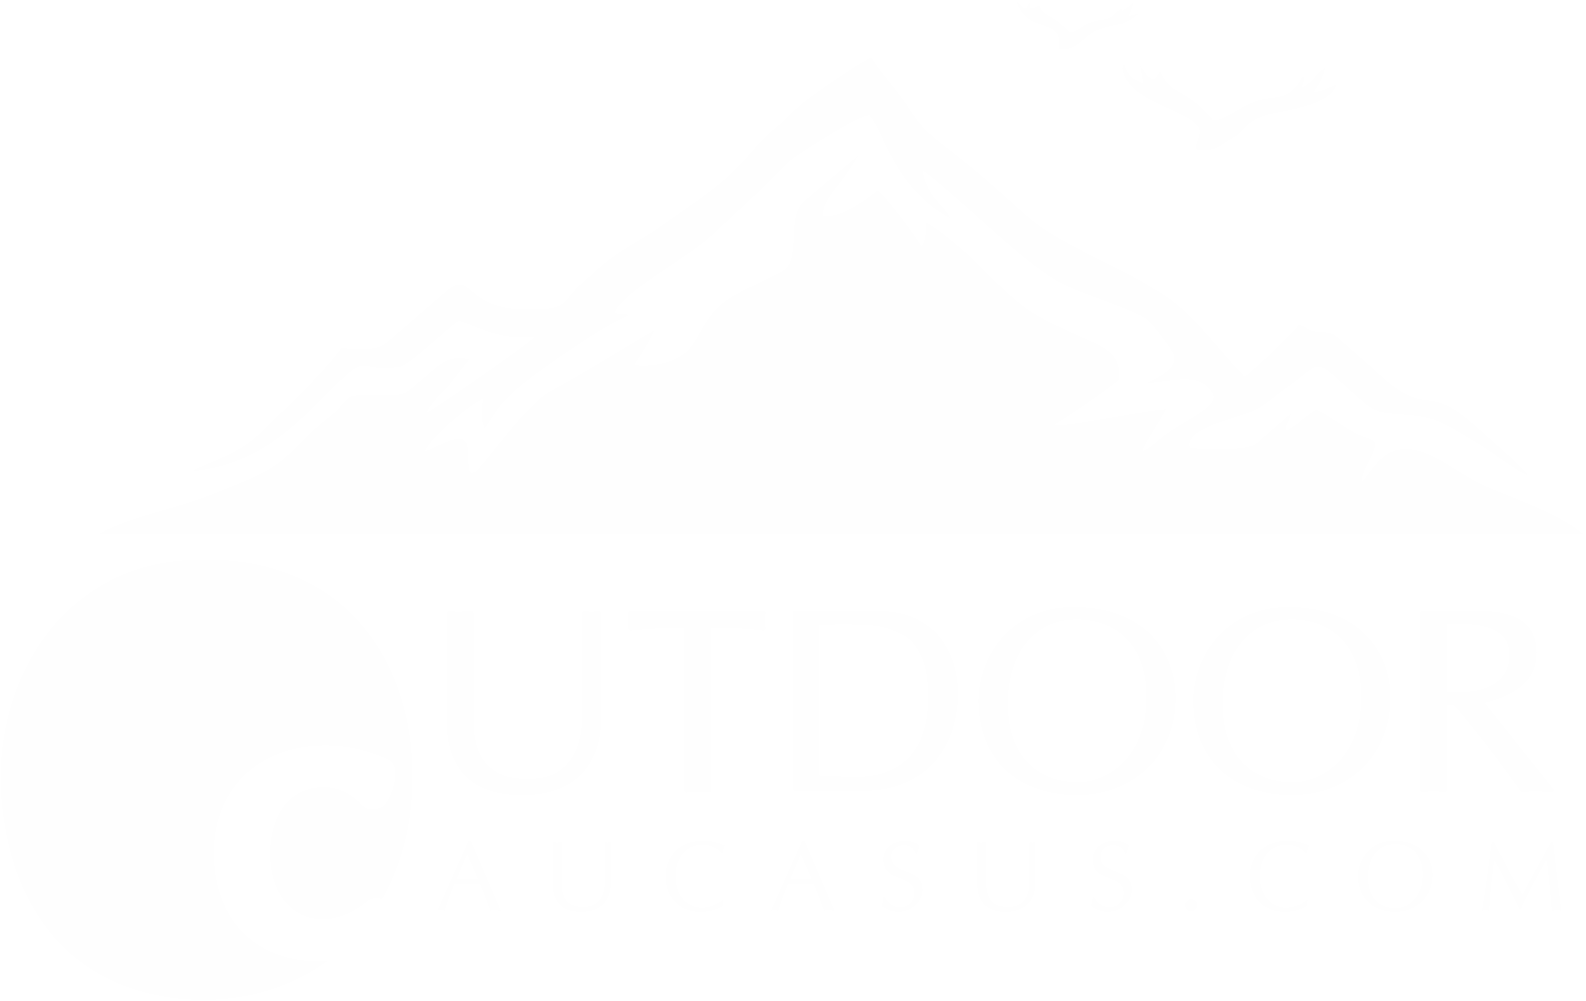 OutDoorCaucasus